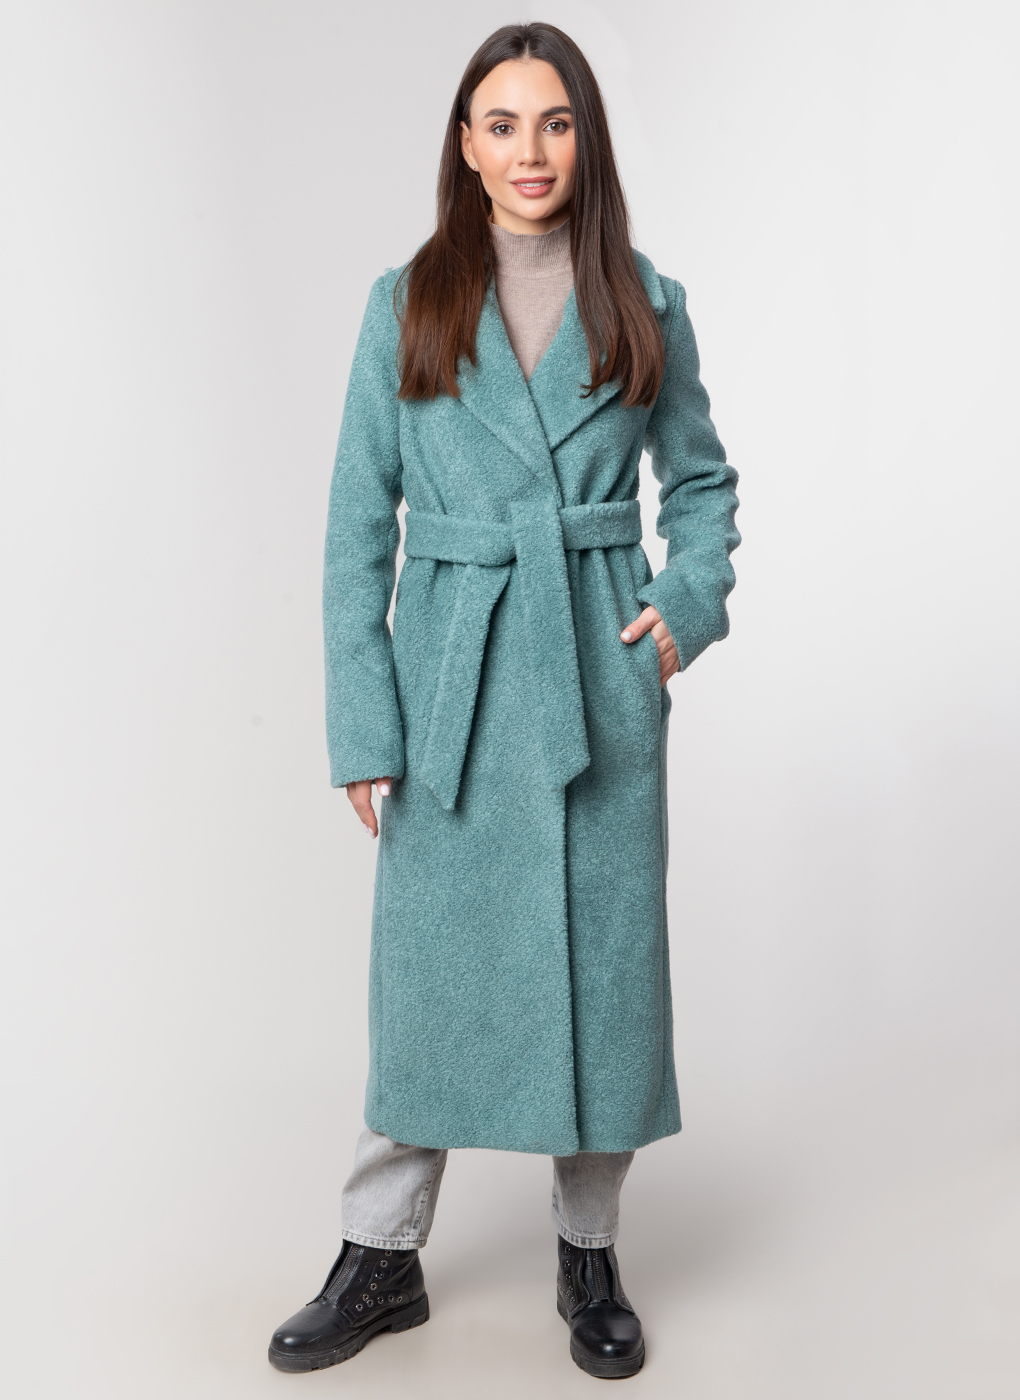 Пальто женское Каляев 59121 зеленое 48 RU